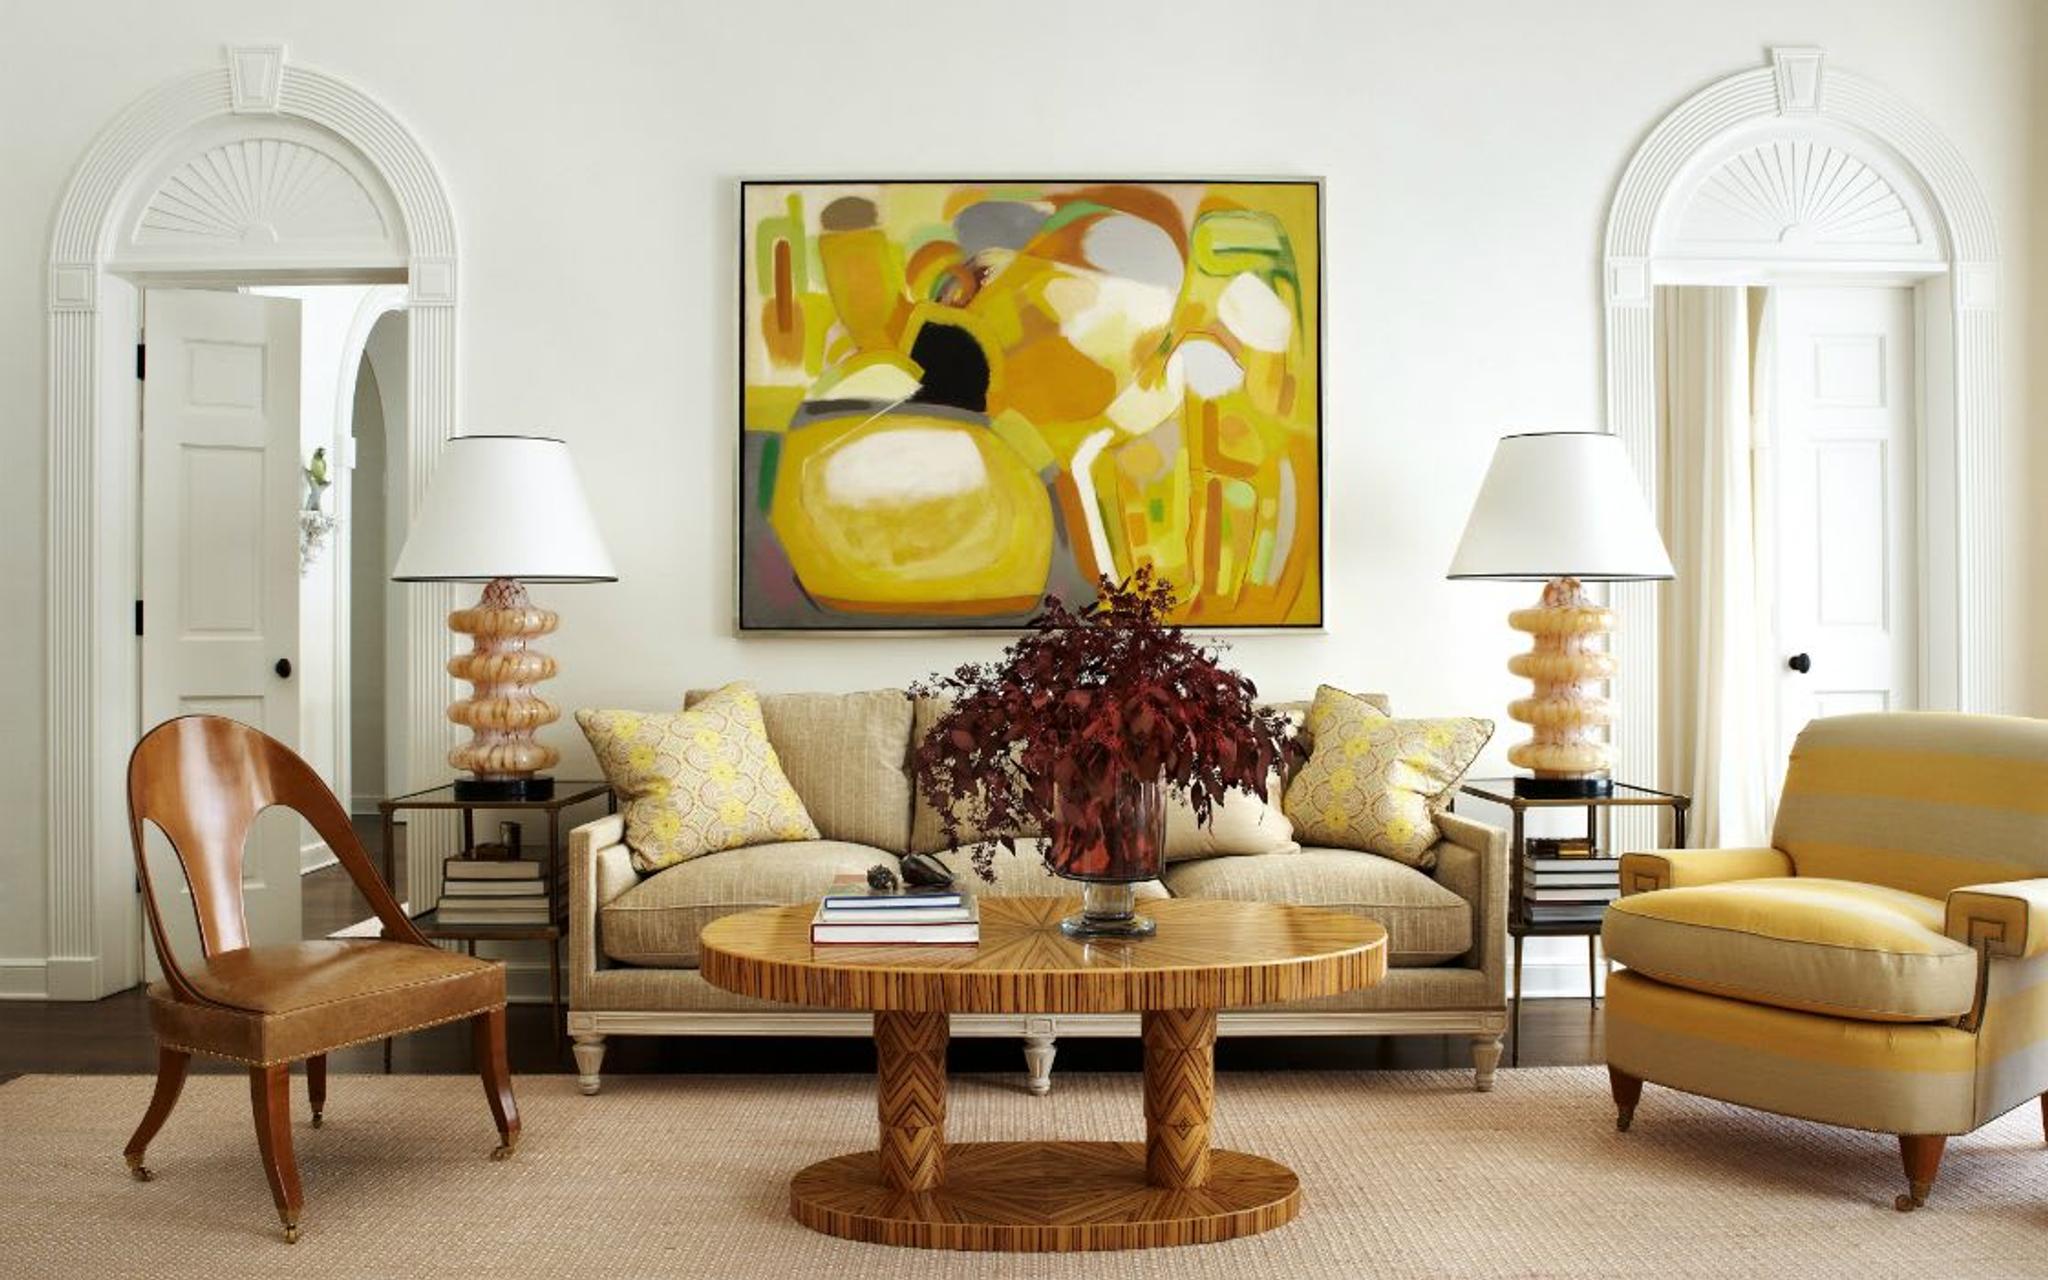 Schimmernder venezianischer Putz und ein handgewebter Seegrassteppich verleihen diesem glamourösen Wohnzimmer einen Hauch von Strand und Leichtigkeit. Überdimensionierte Murano-Lampen verleihen dem Raum einen Hauch von Moderne.